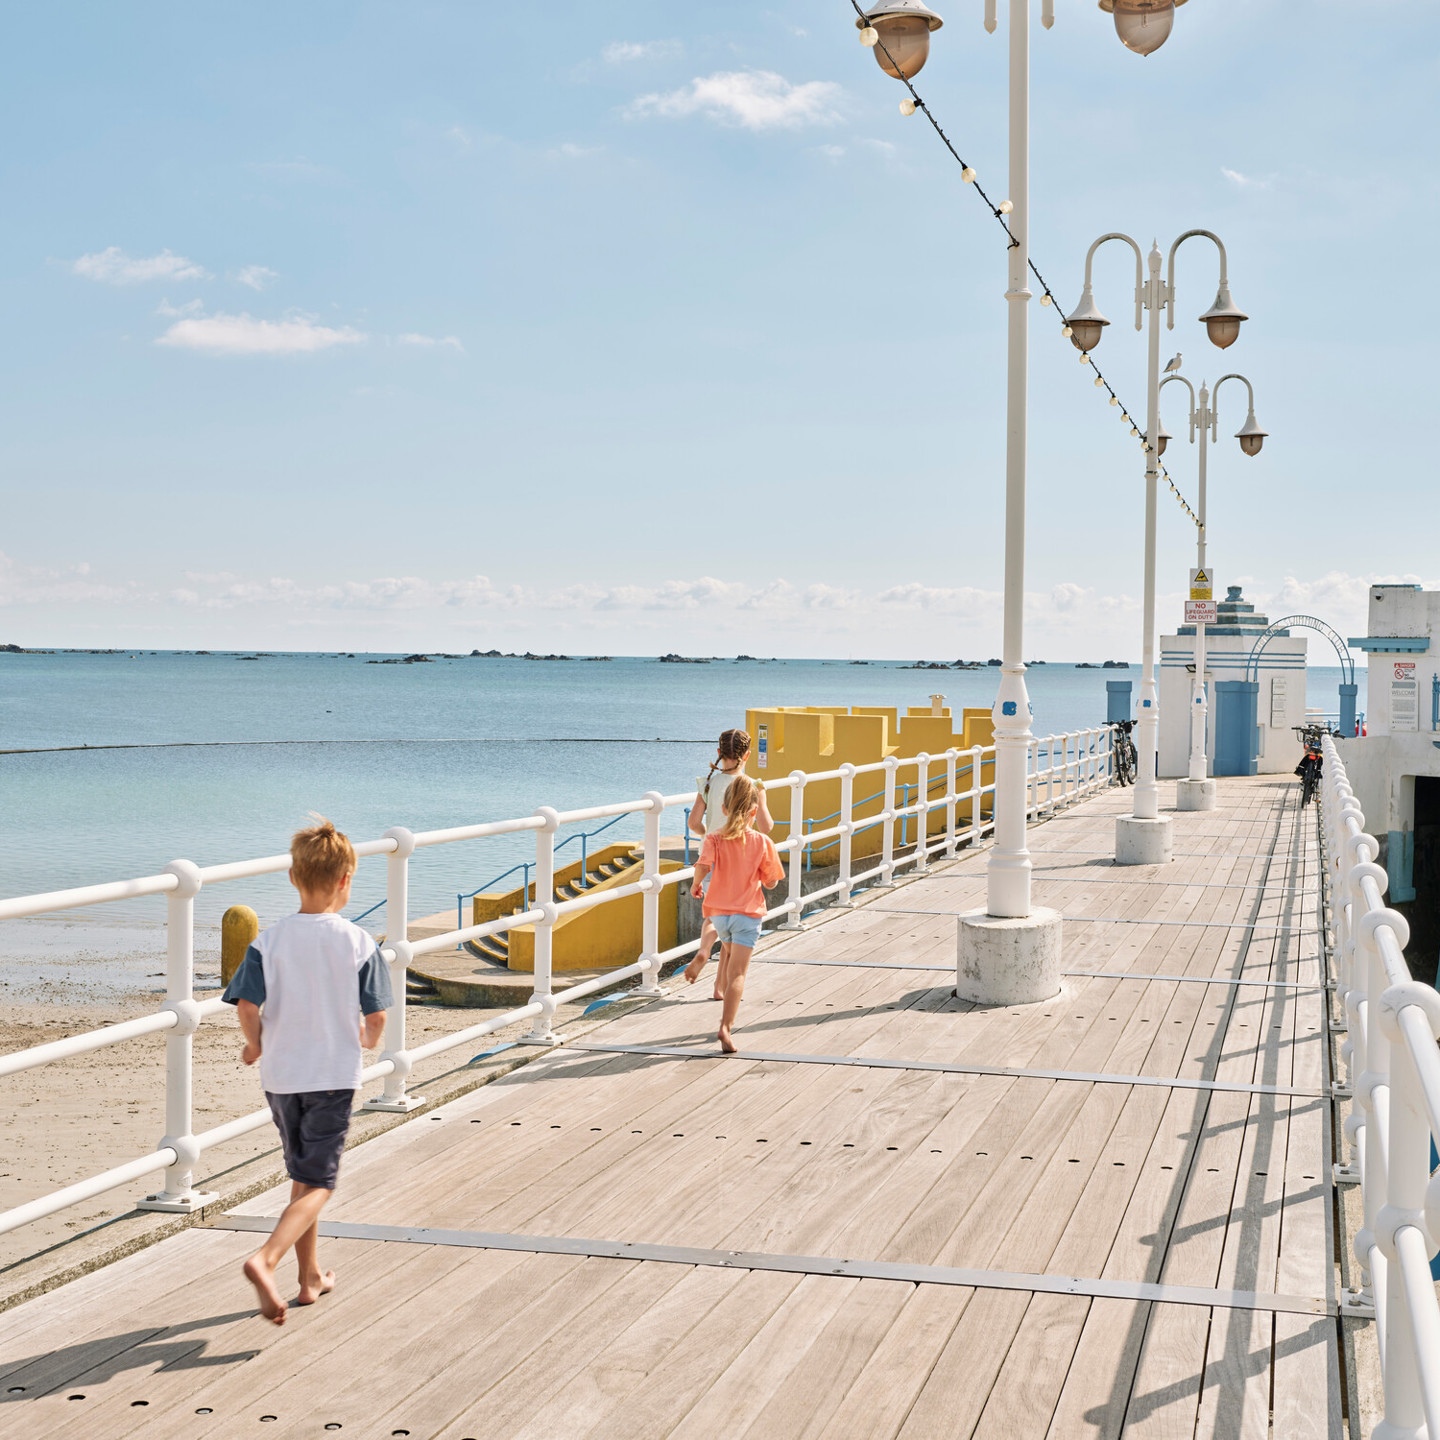 Kids running along the pier